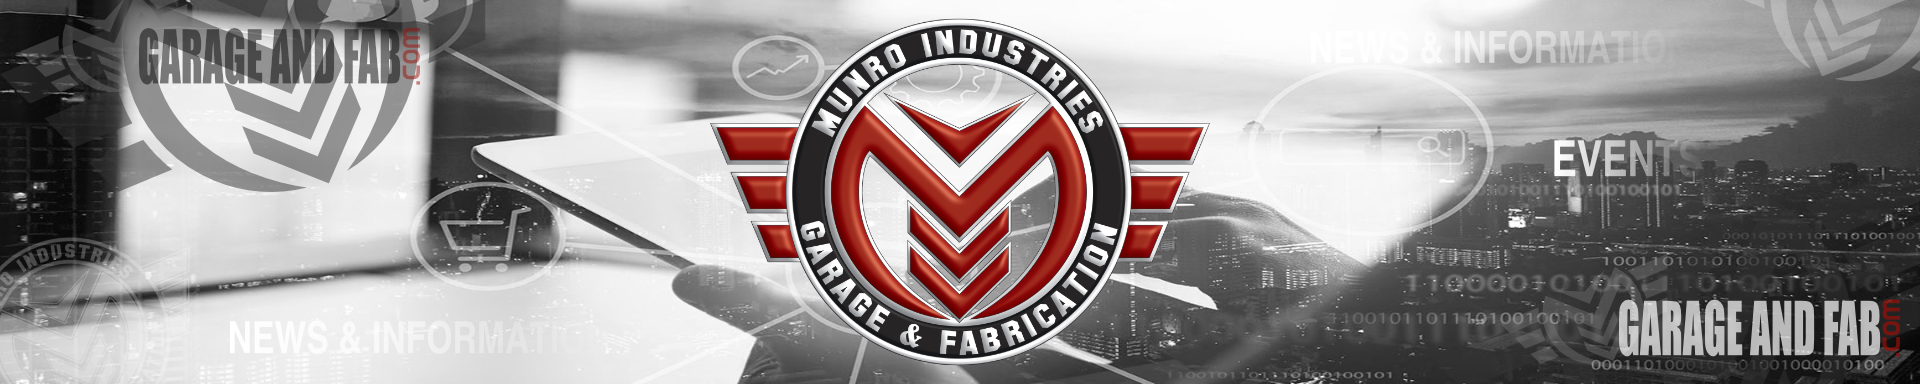 News & Information | GarageAndFab.com | Munro Industries gf-10010101